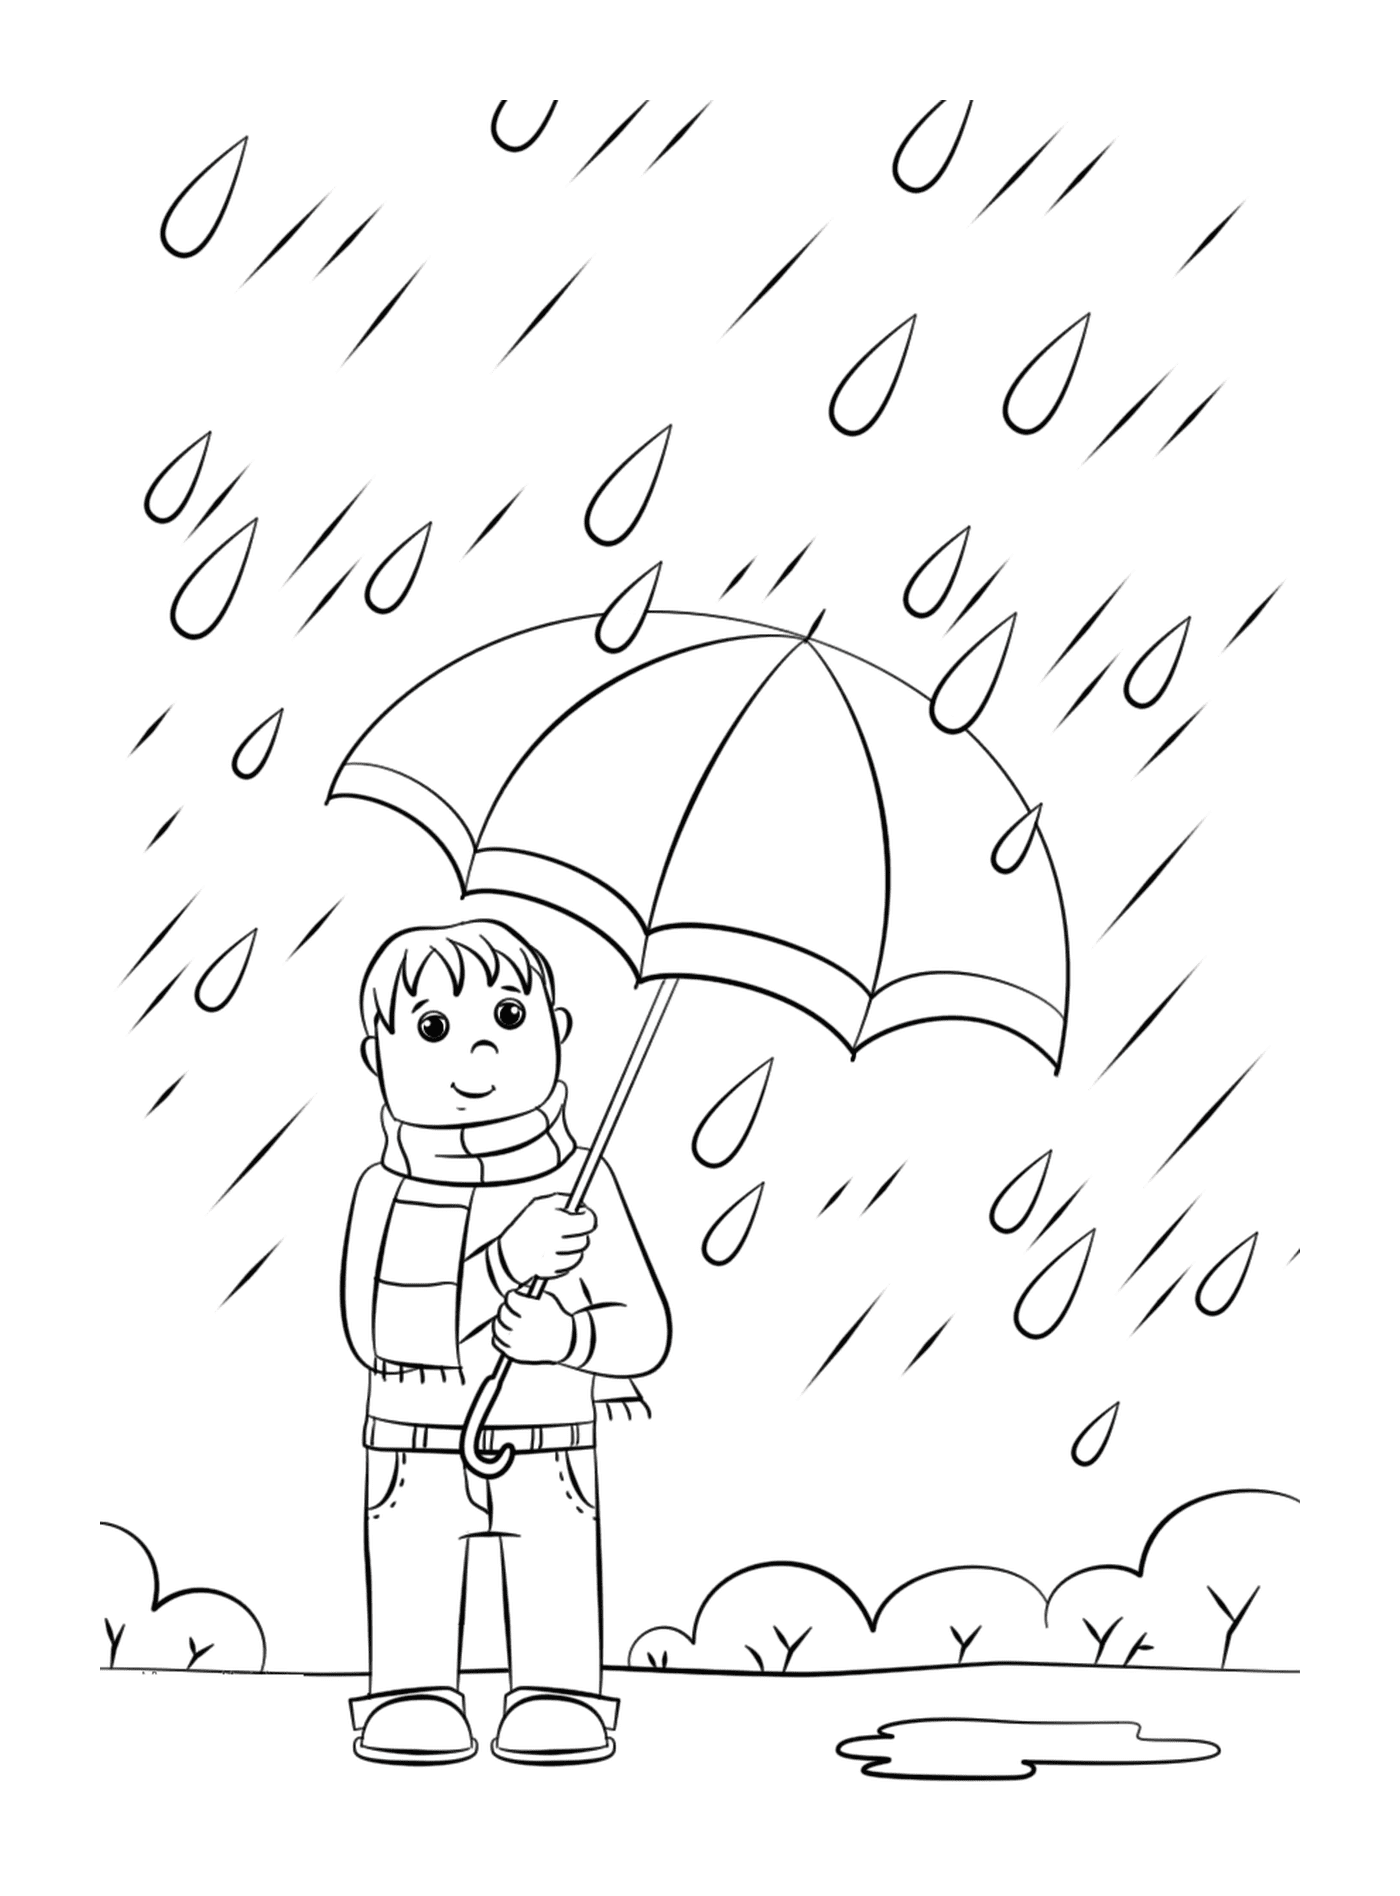  A man holding an umbrella in the rain 